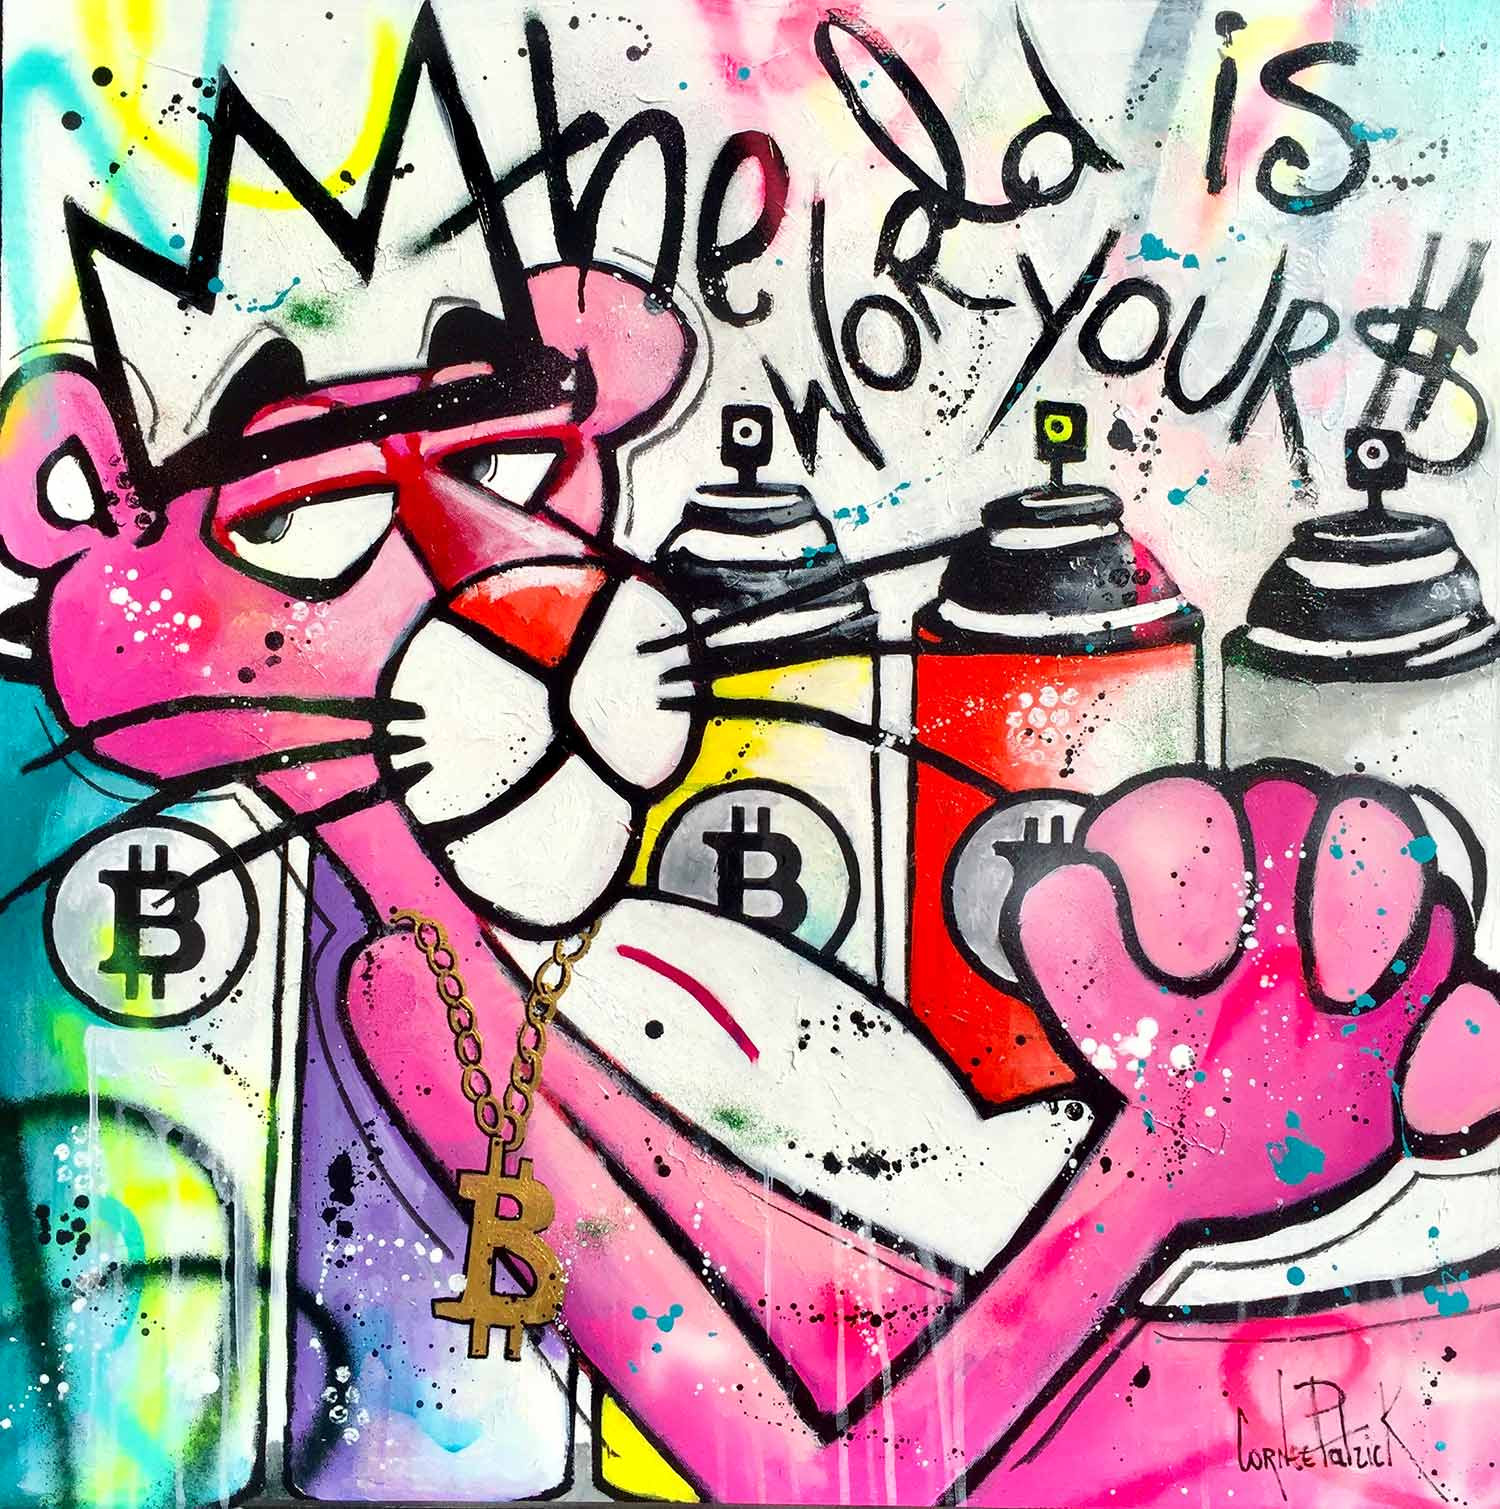 Pink Panther Pop Art 